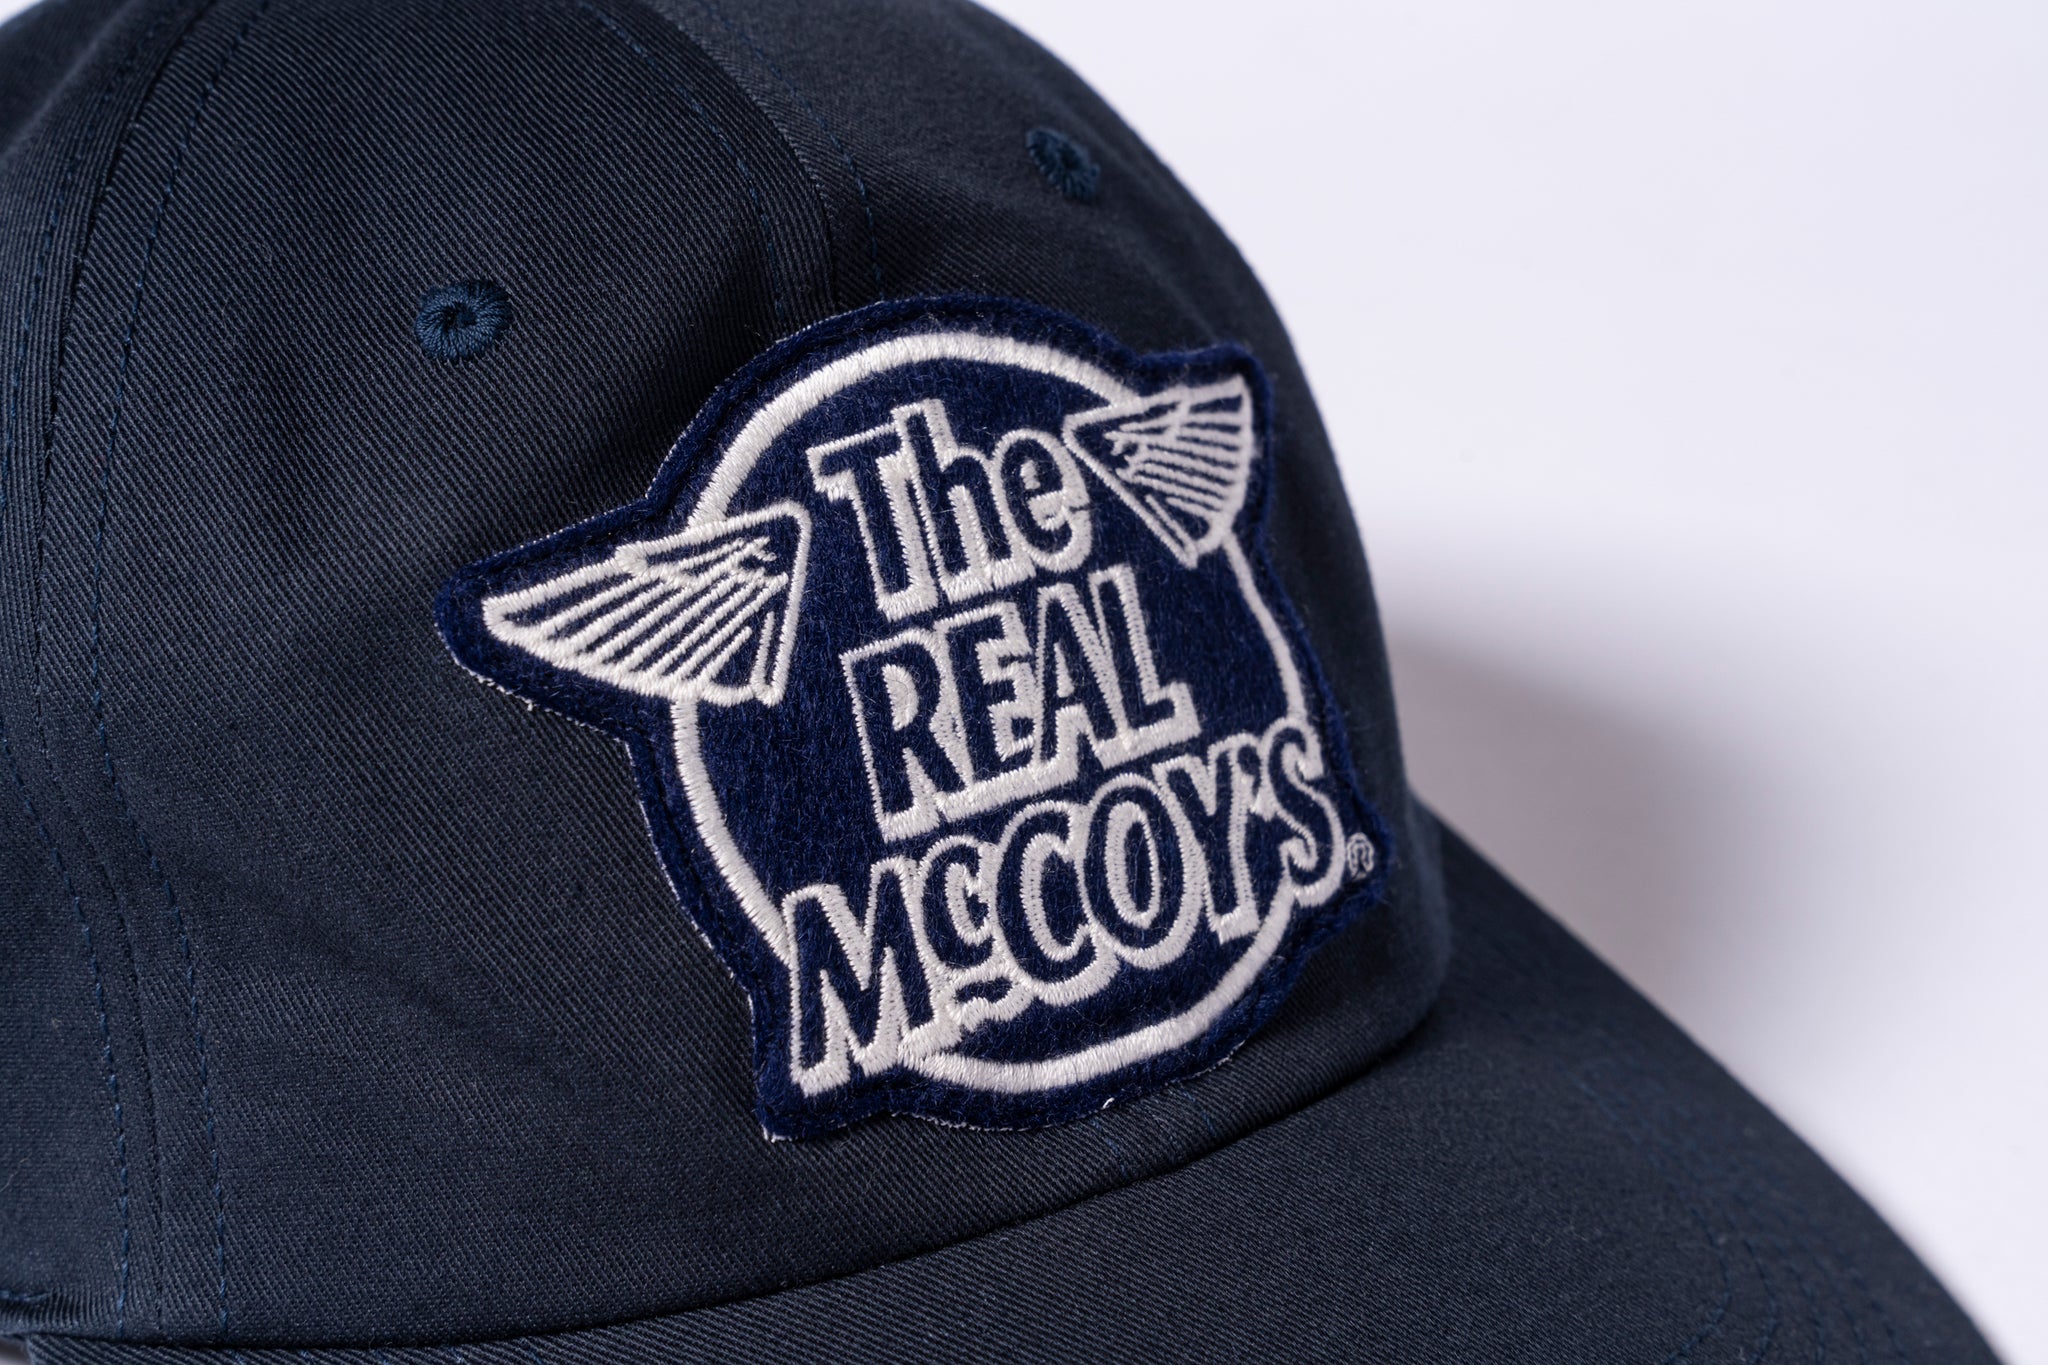 THE REAL McCOY’S LOGO BASEBALL CAP ‘WHITE LOGO’ - NAVY / F